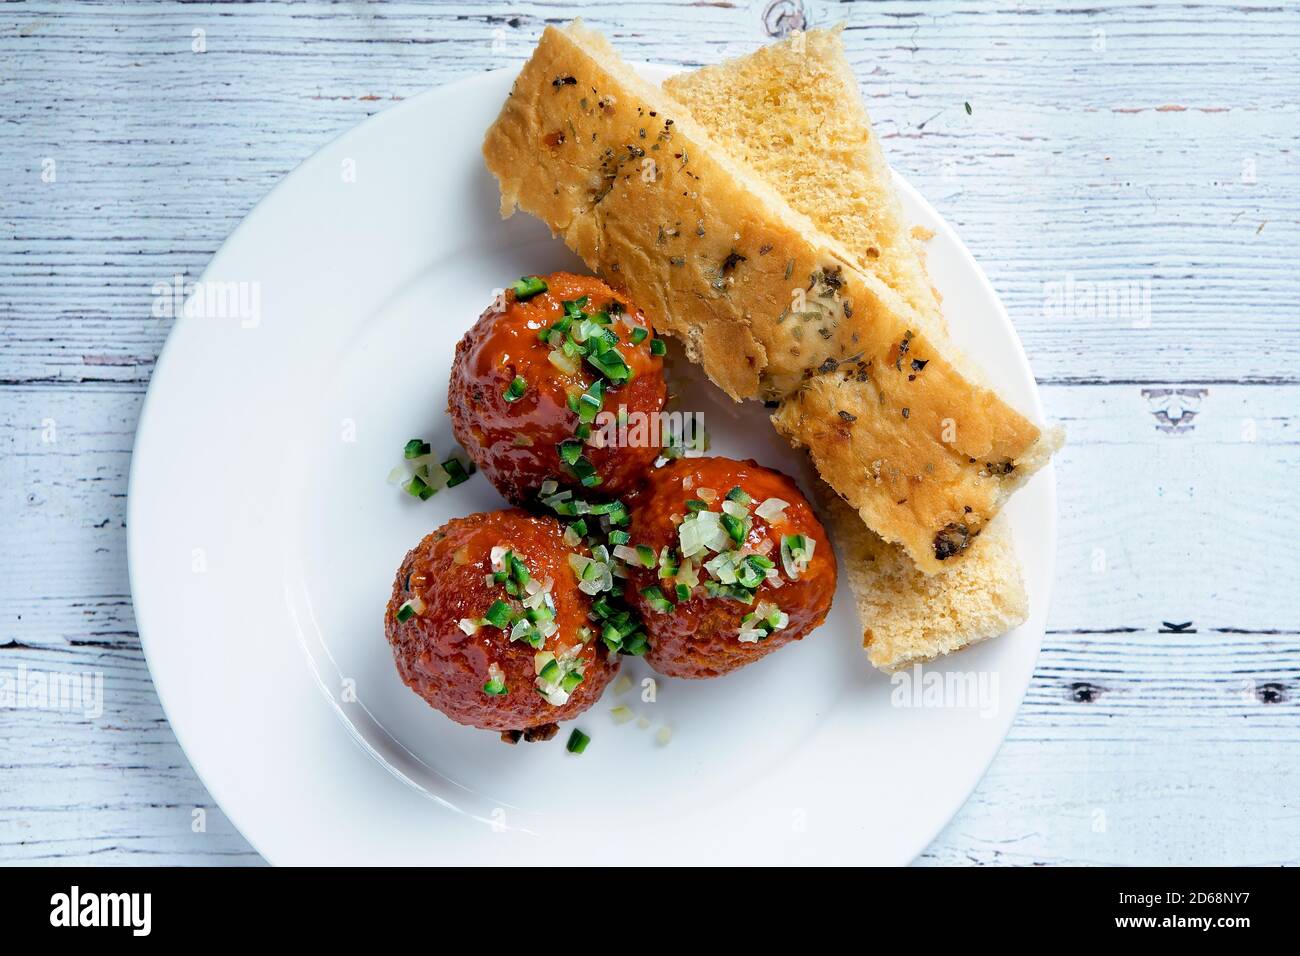 Plat d'une assiette de meatball servi avec du pain italien Banque D'Images